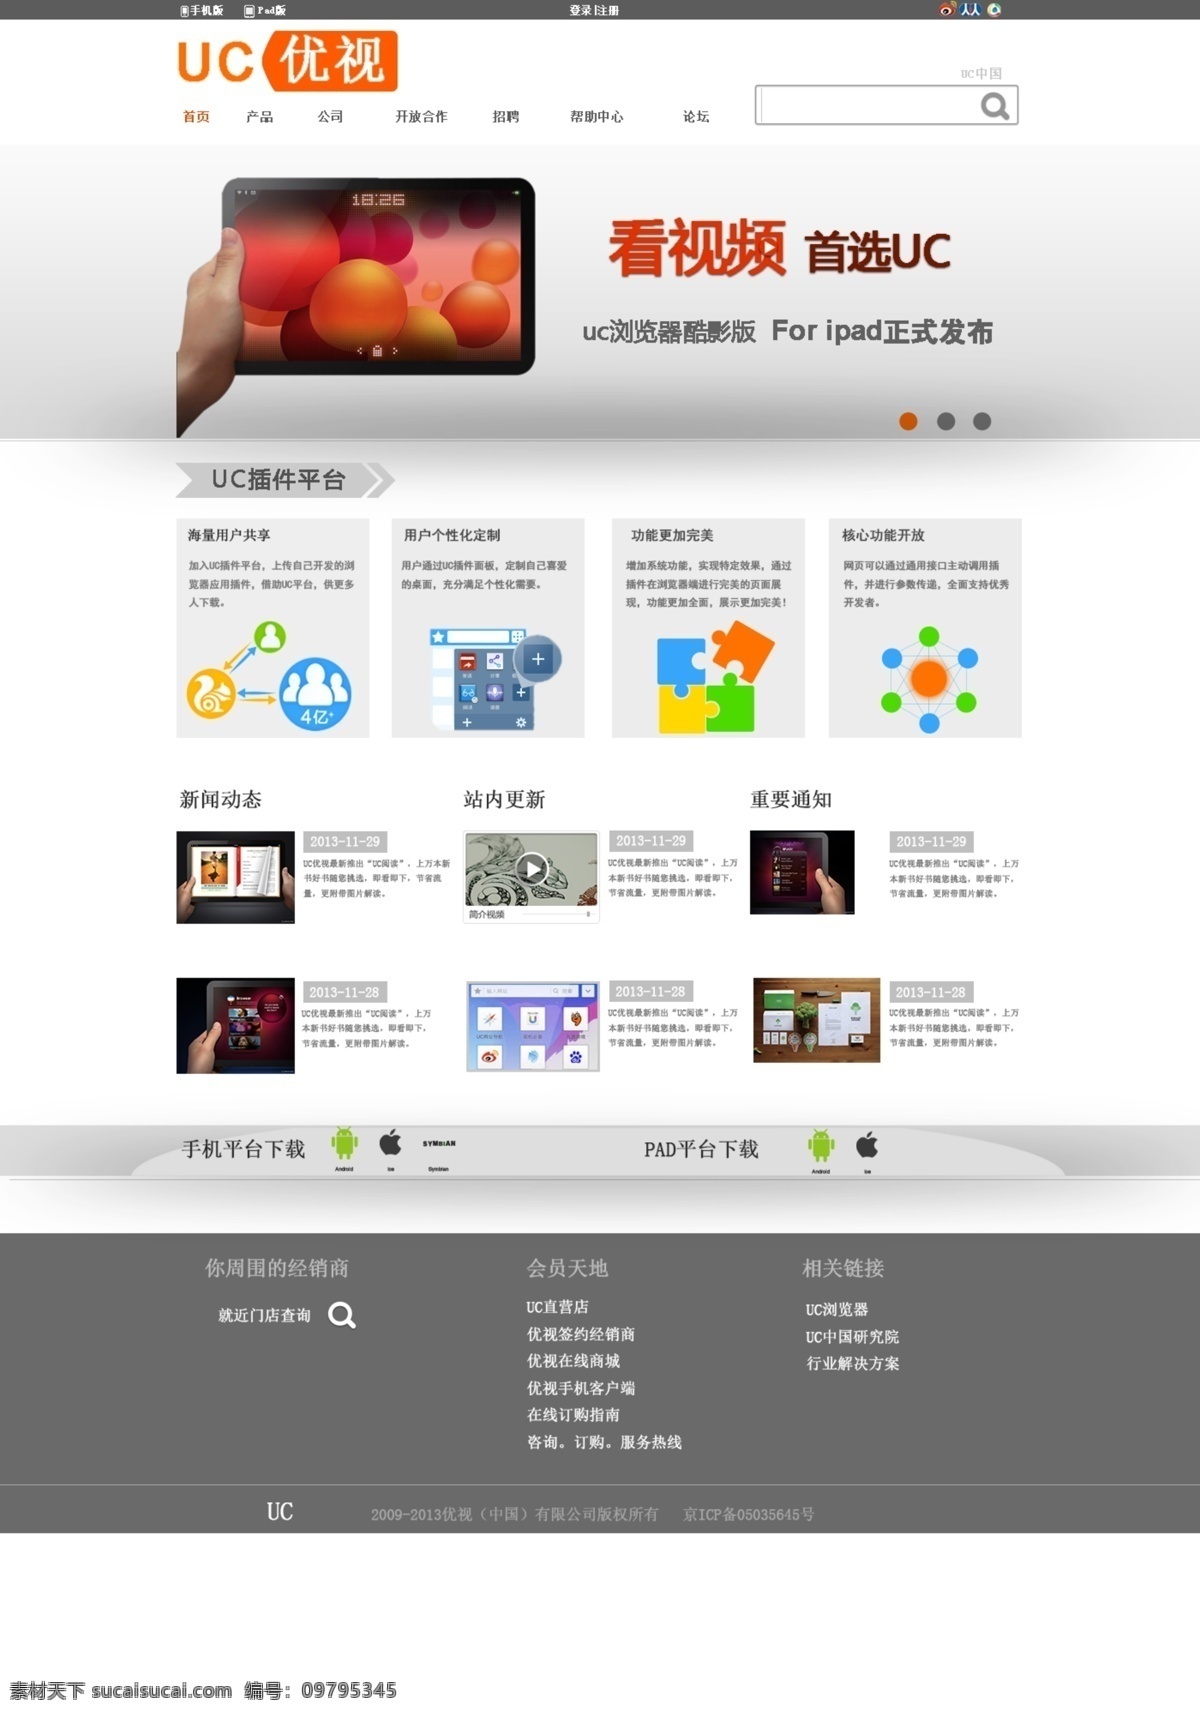 网页模板 网站 源文件 中文模板 uc 网站设计 模板下载 uc网站设计 首页 视频网 psd源文件